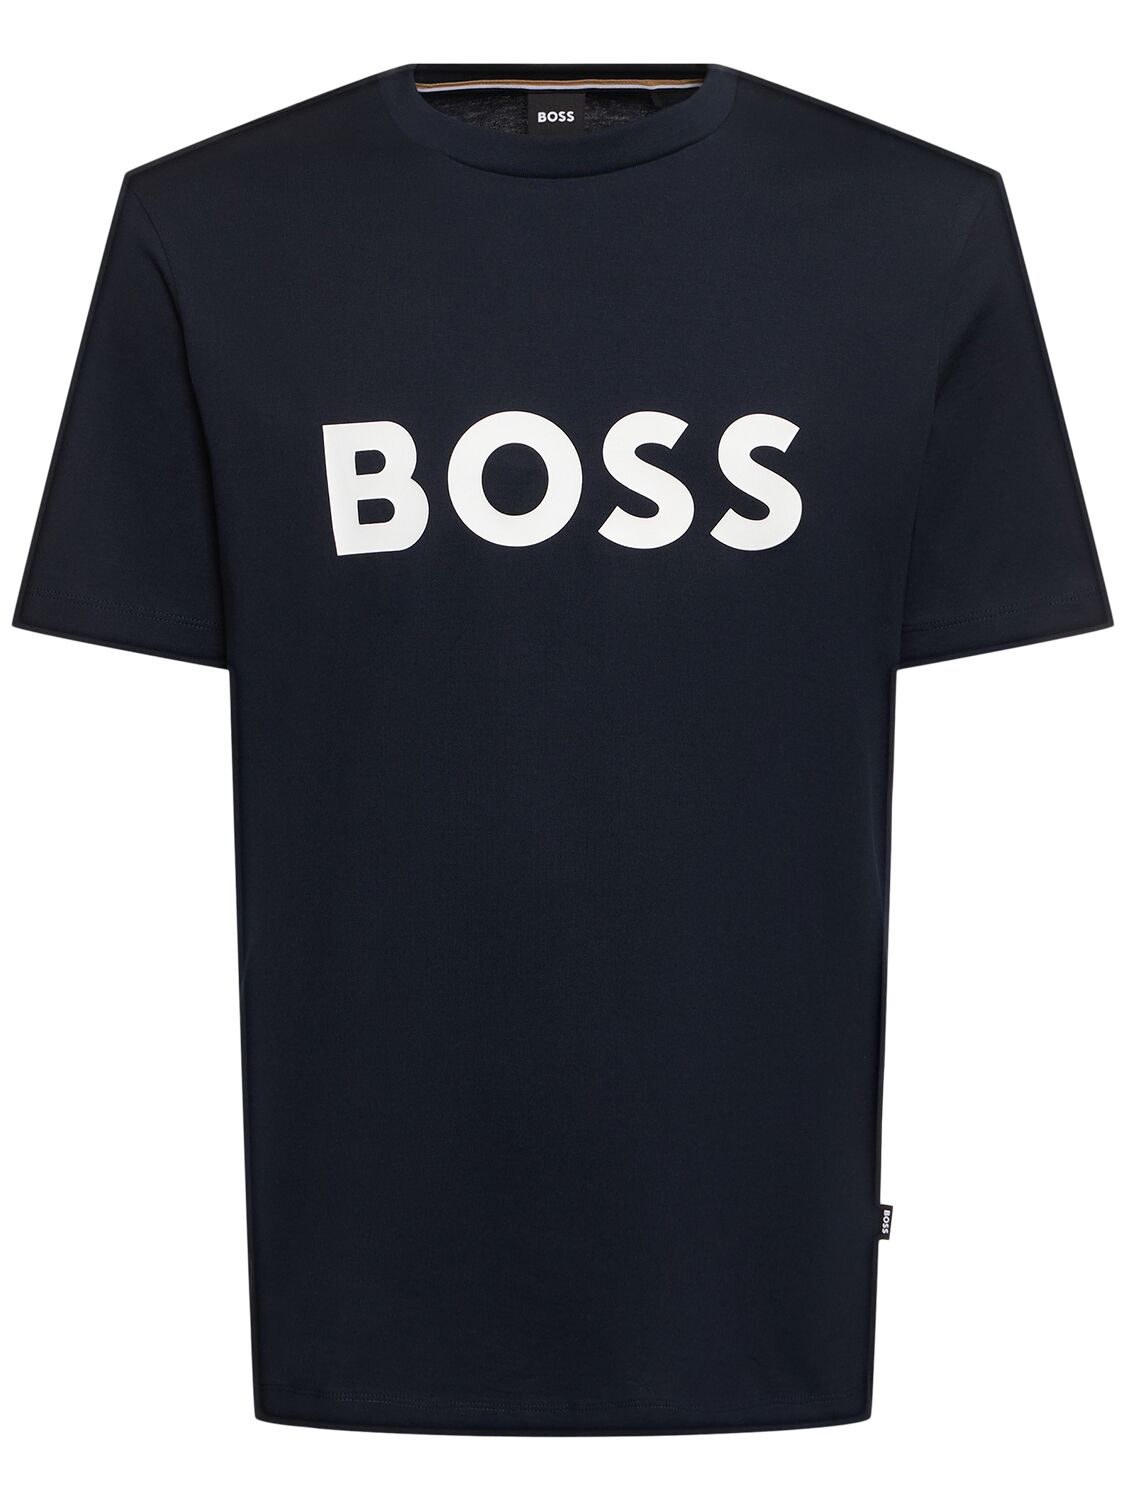 Hugo Boss Tiburt 354 Logo棉质t恤 In Black